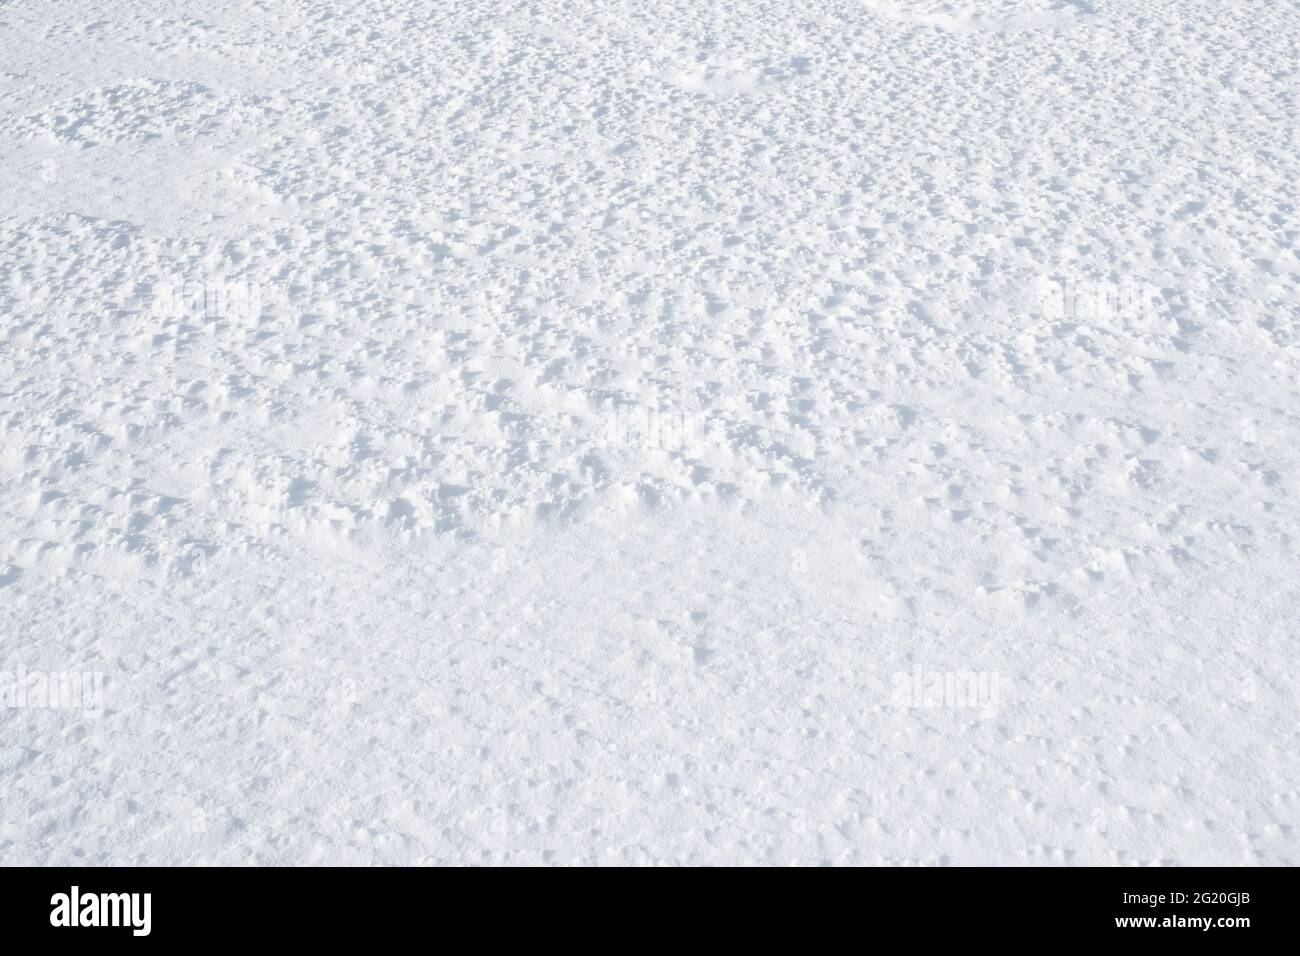 Sol blanc enneigé. La nature en hibernation pendant l'hiver. Banque D'Images